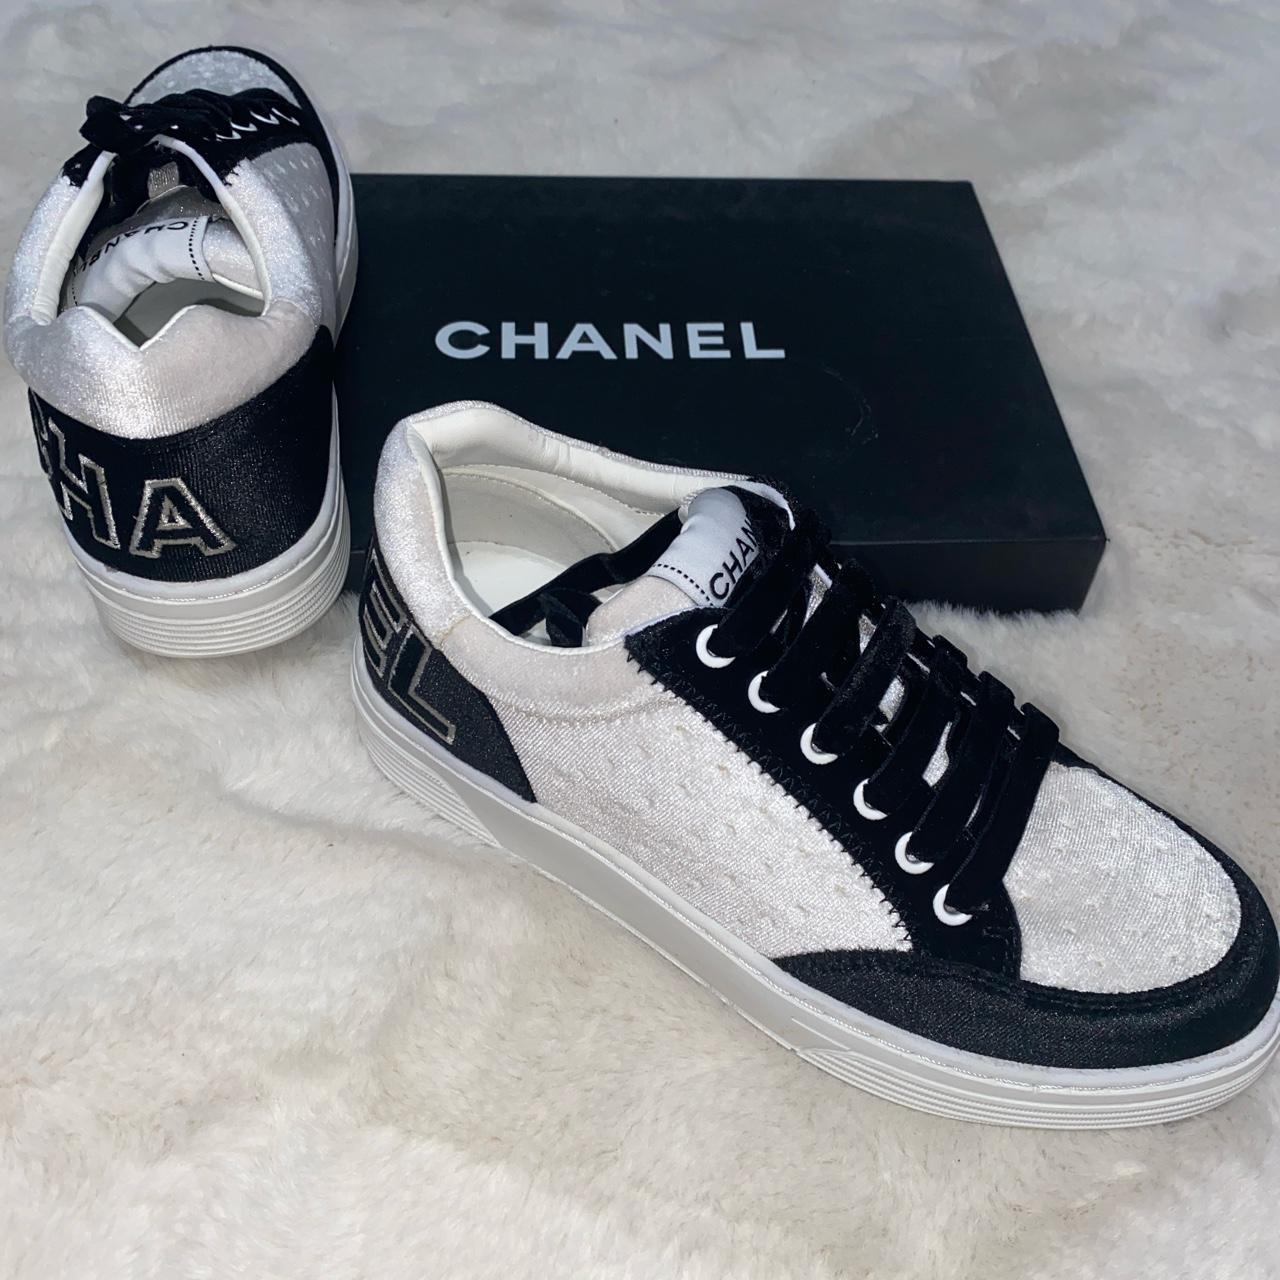 Chanel sneakers. Size 38 1/2 (US women 8.5 US men